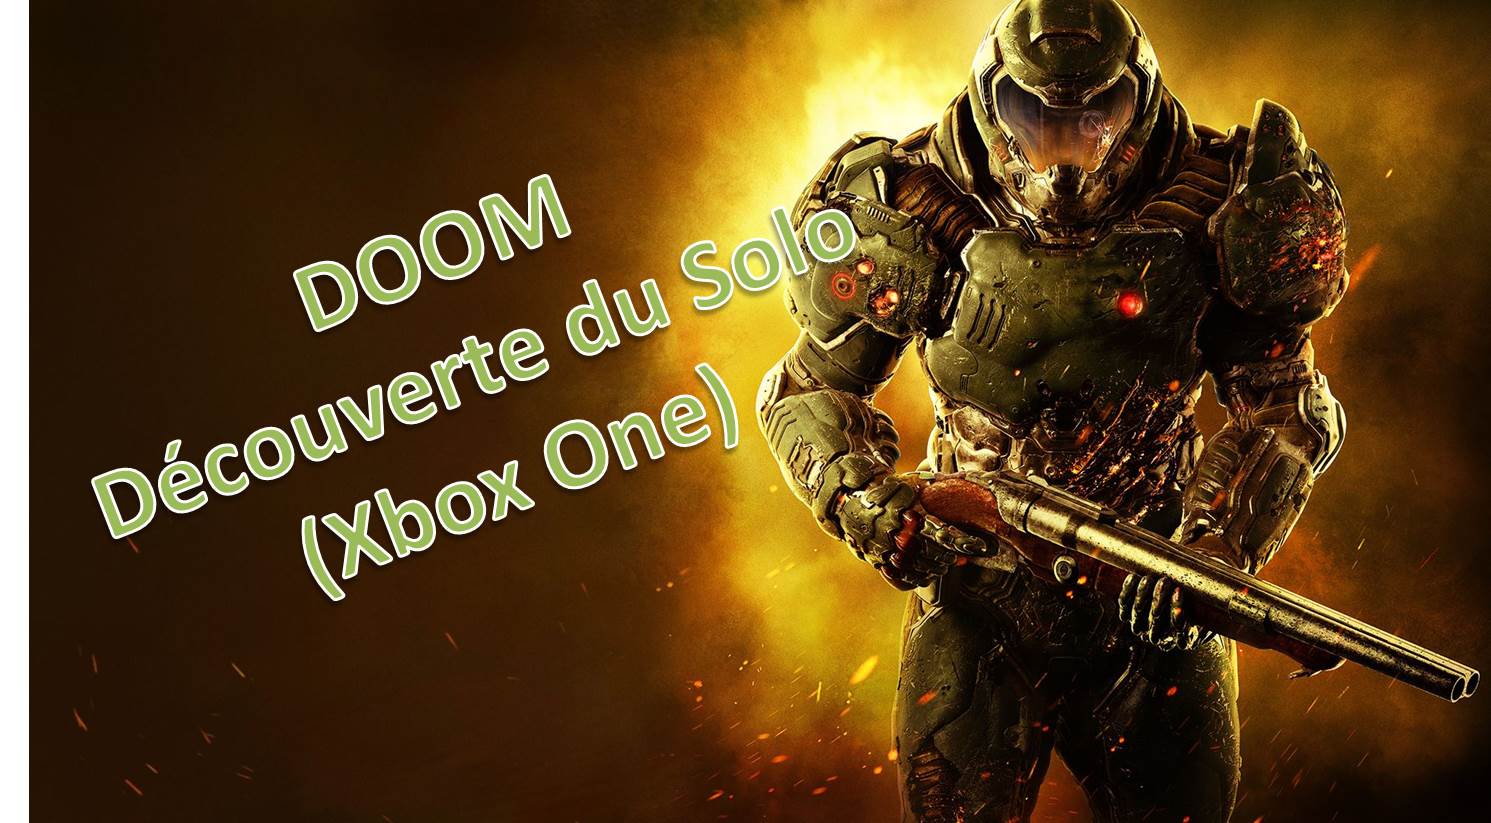 Doom: Découverte du solo (Xbox one)